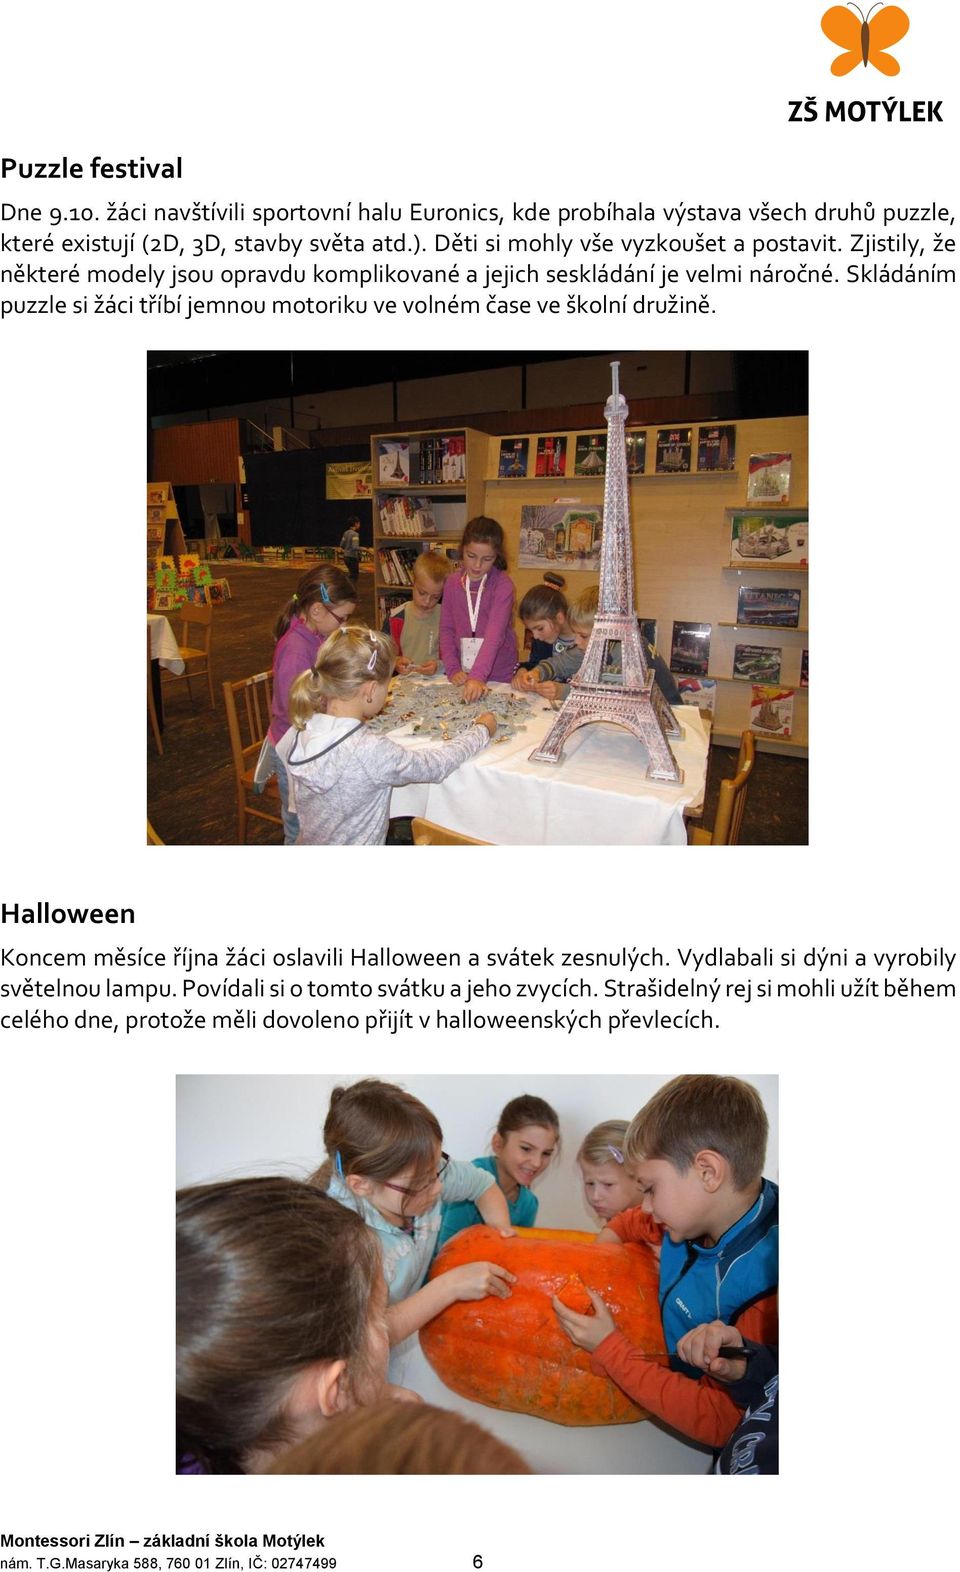 Výroční zpráva Montessori Zlín základní škola a mateřská škola Motýlek -  PDF Free Download